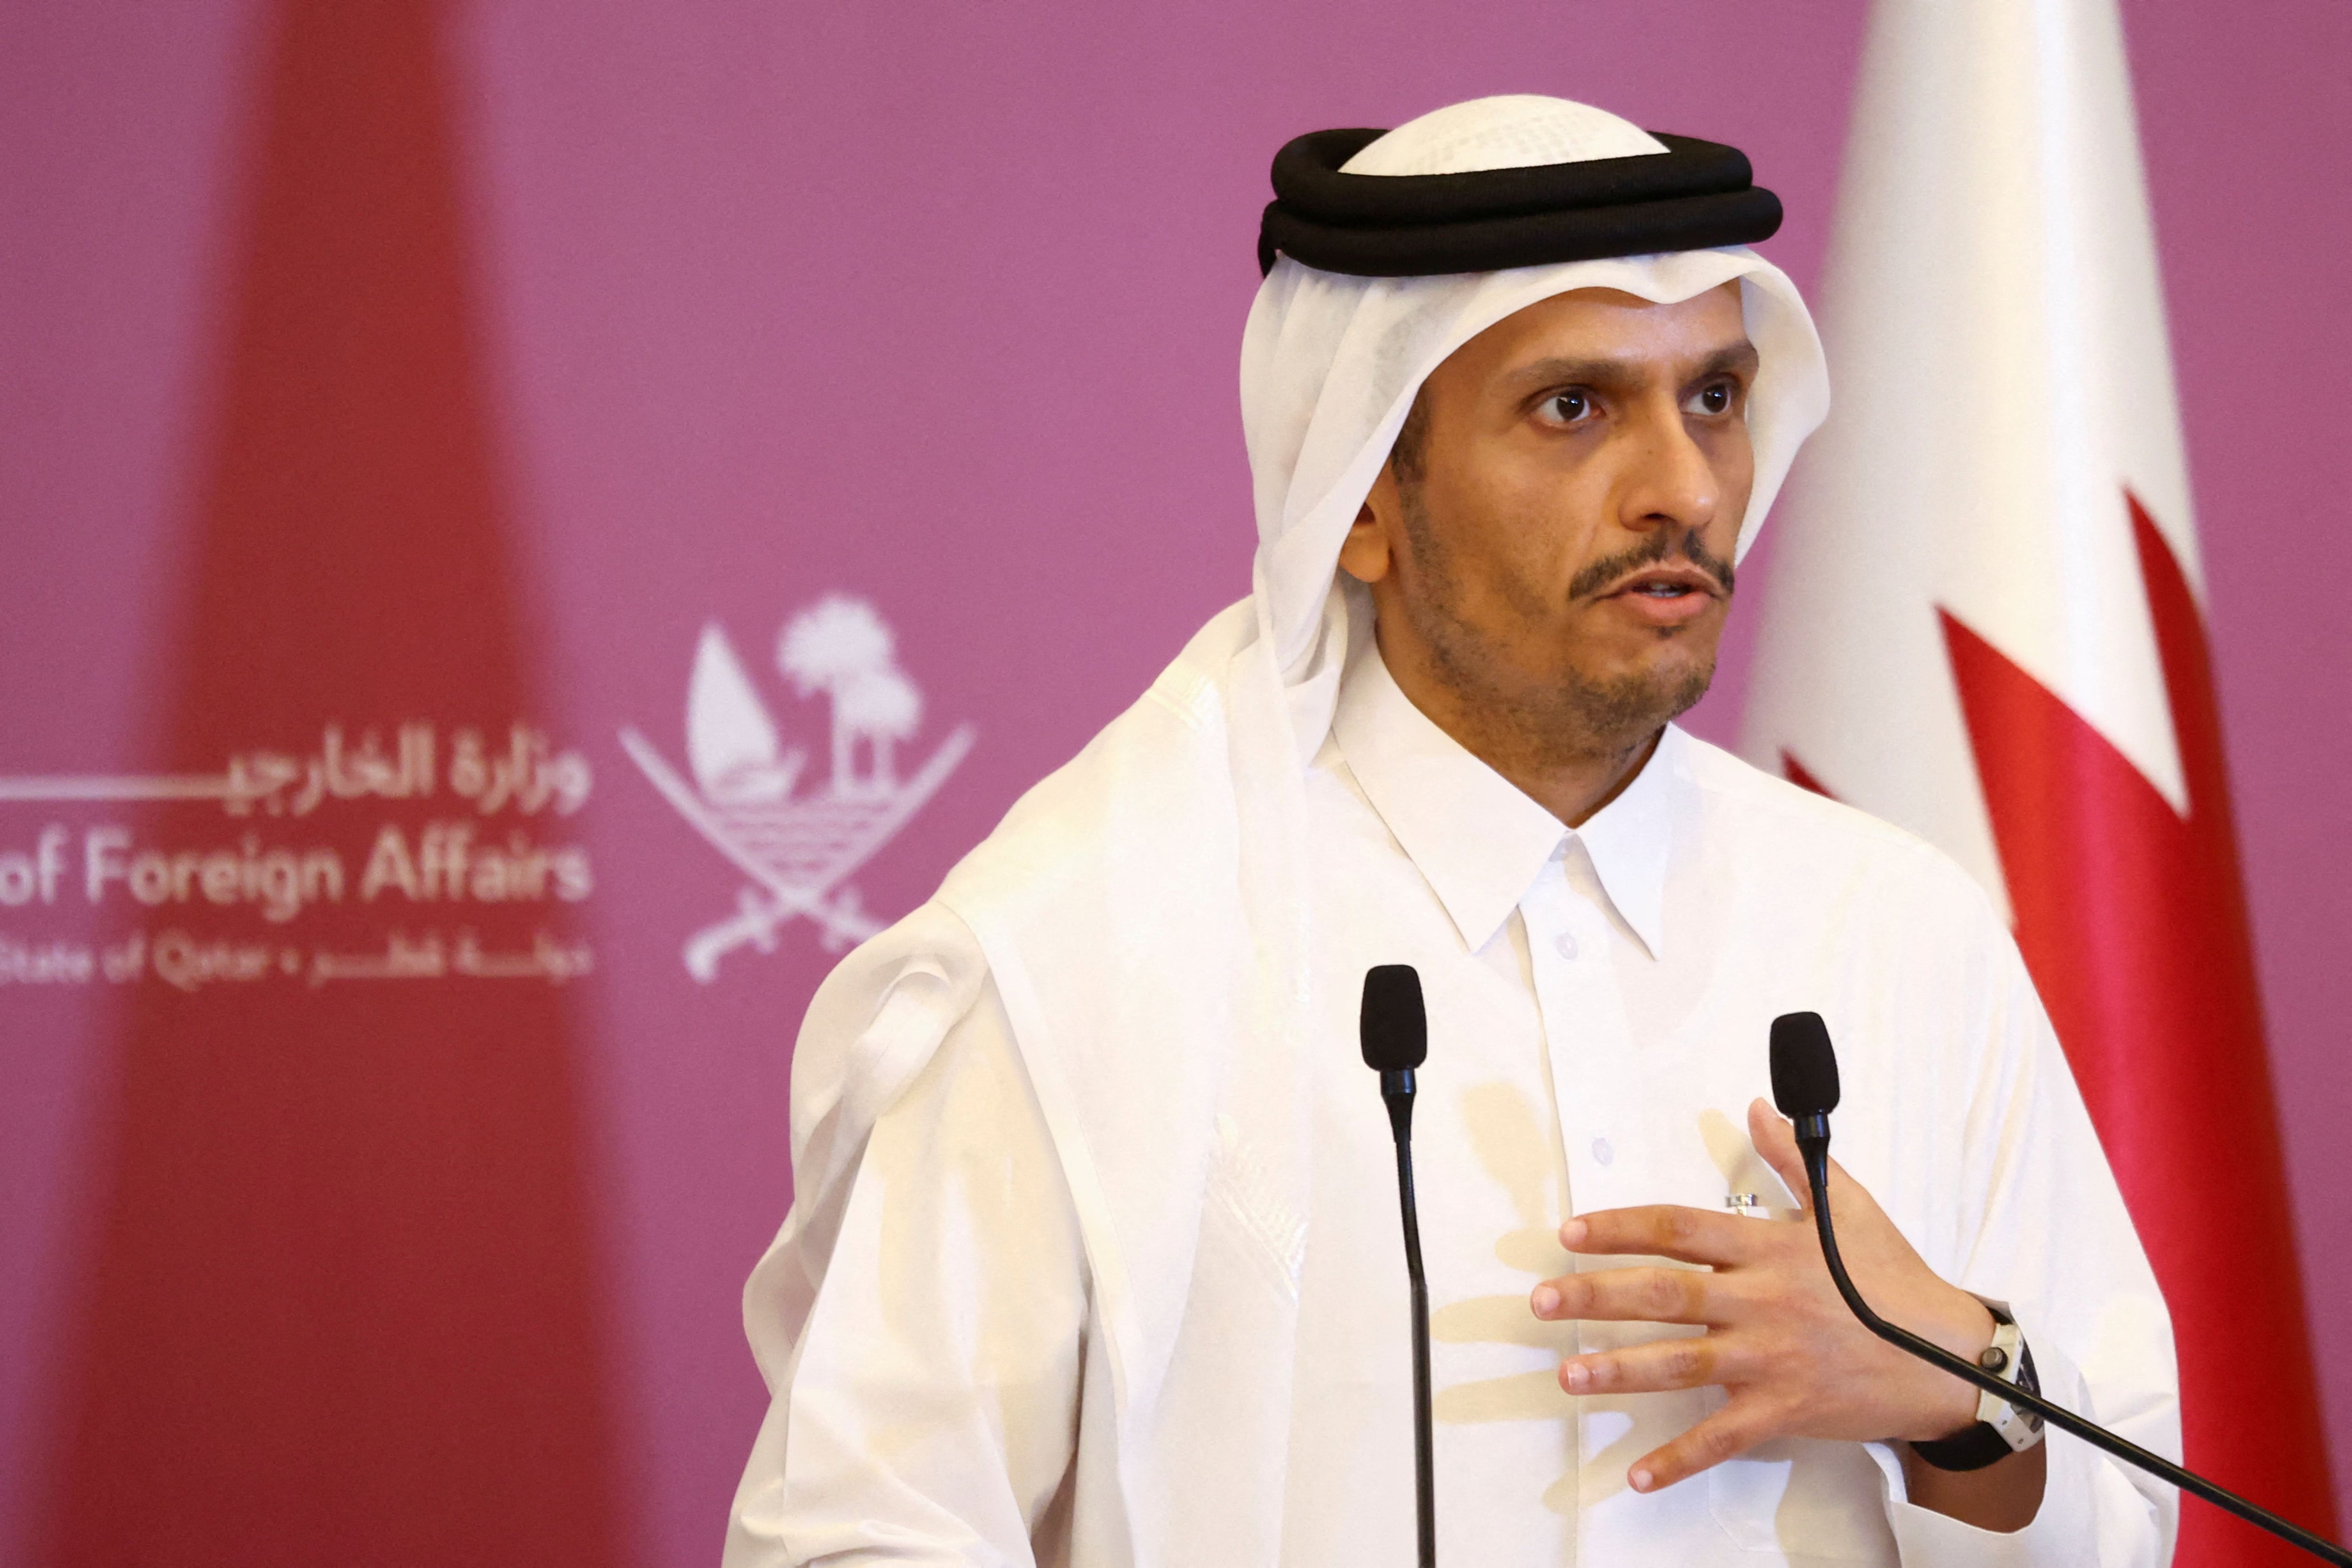 El ministro de Asuntos Exteriores de Qatar, Sheikh Mohammed bin Abdulrahman Al-Thani (REUTERS/Ibraheem Al Omari)